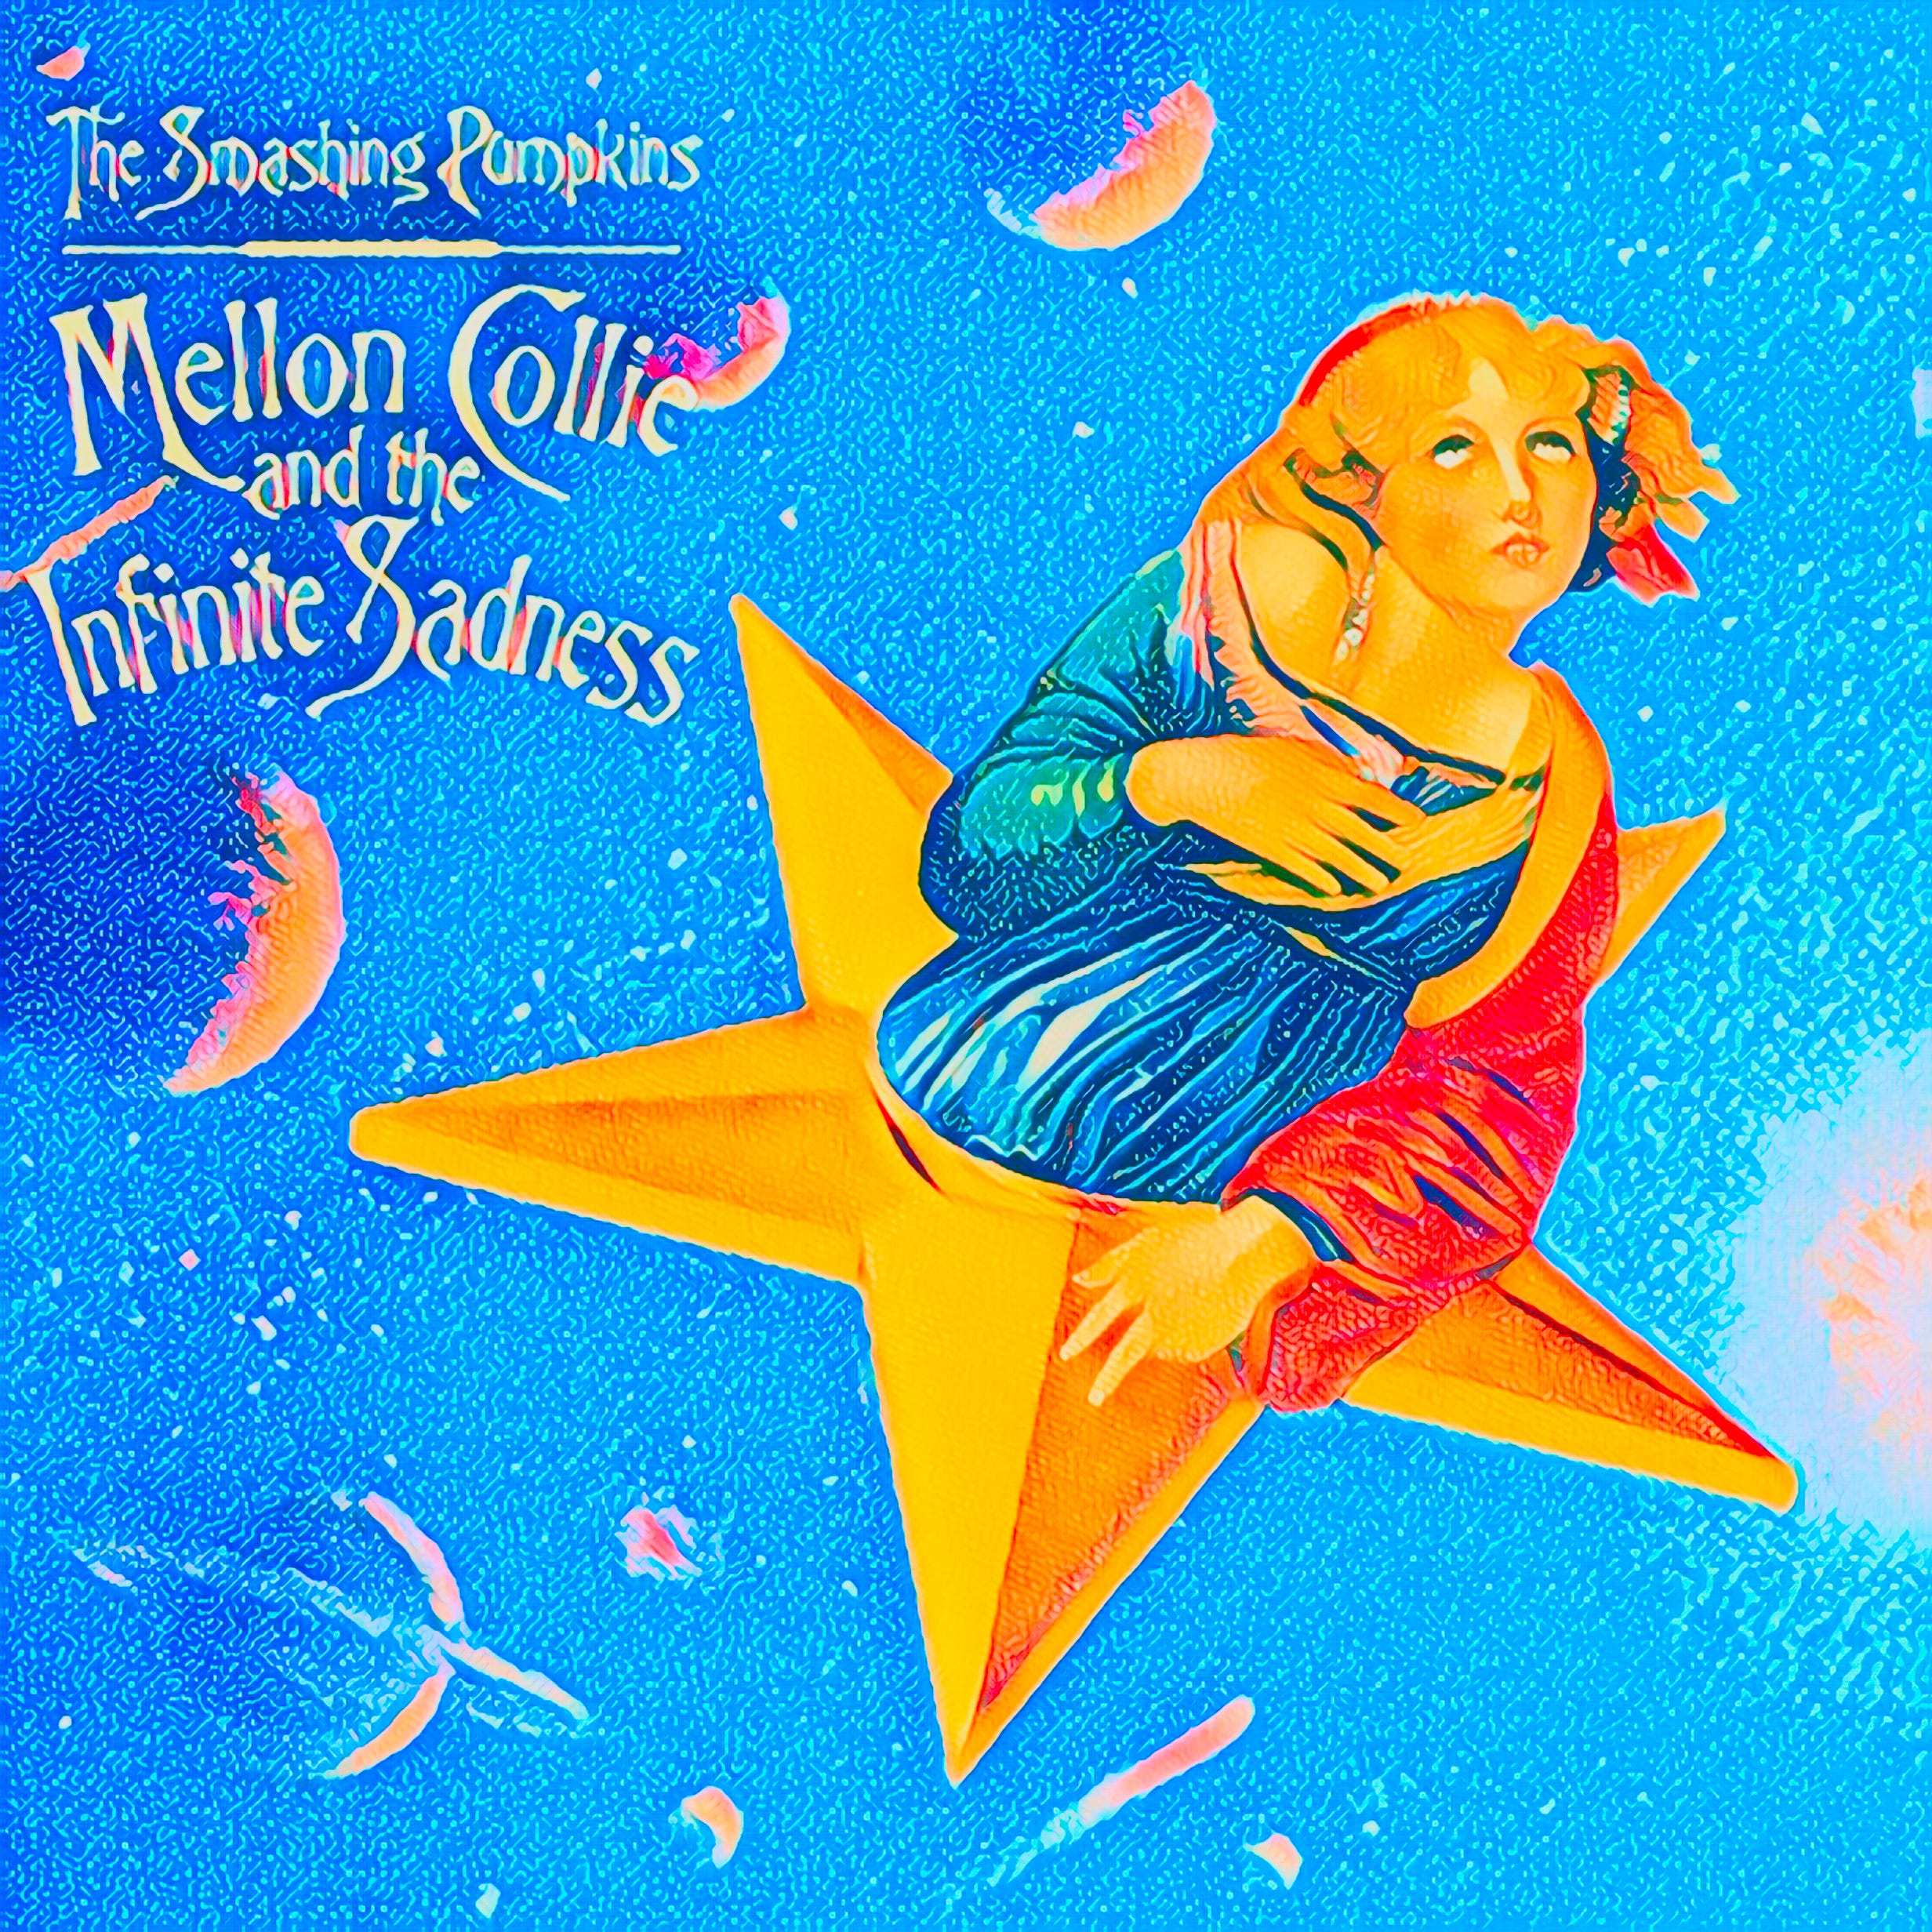 The Smashing Pumpkins' Mellon Collie and the Infinite Sadness